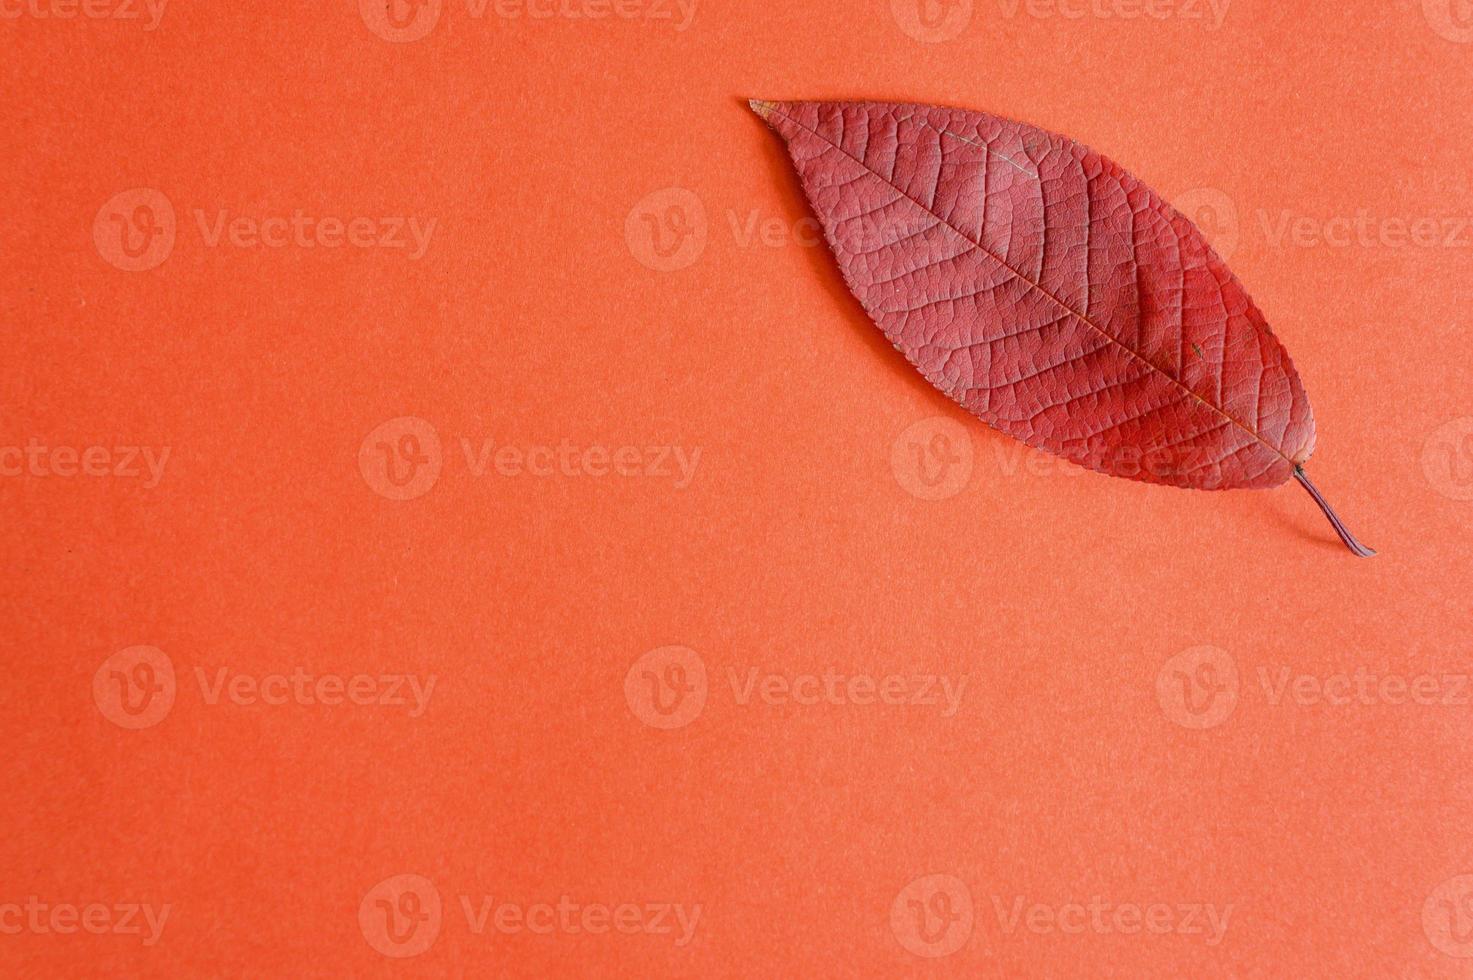 rote gefallene Herbstkirschblätter auf einem roten Papierhintergrund foto